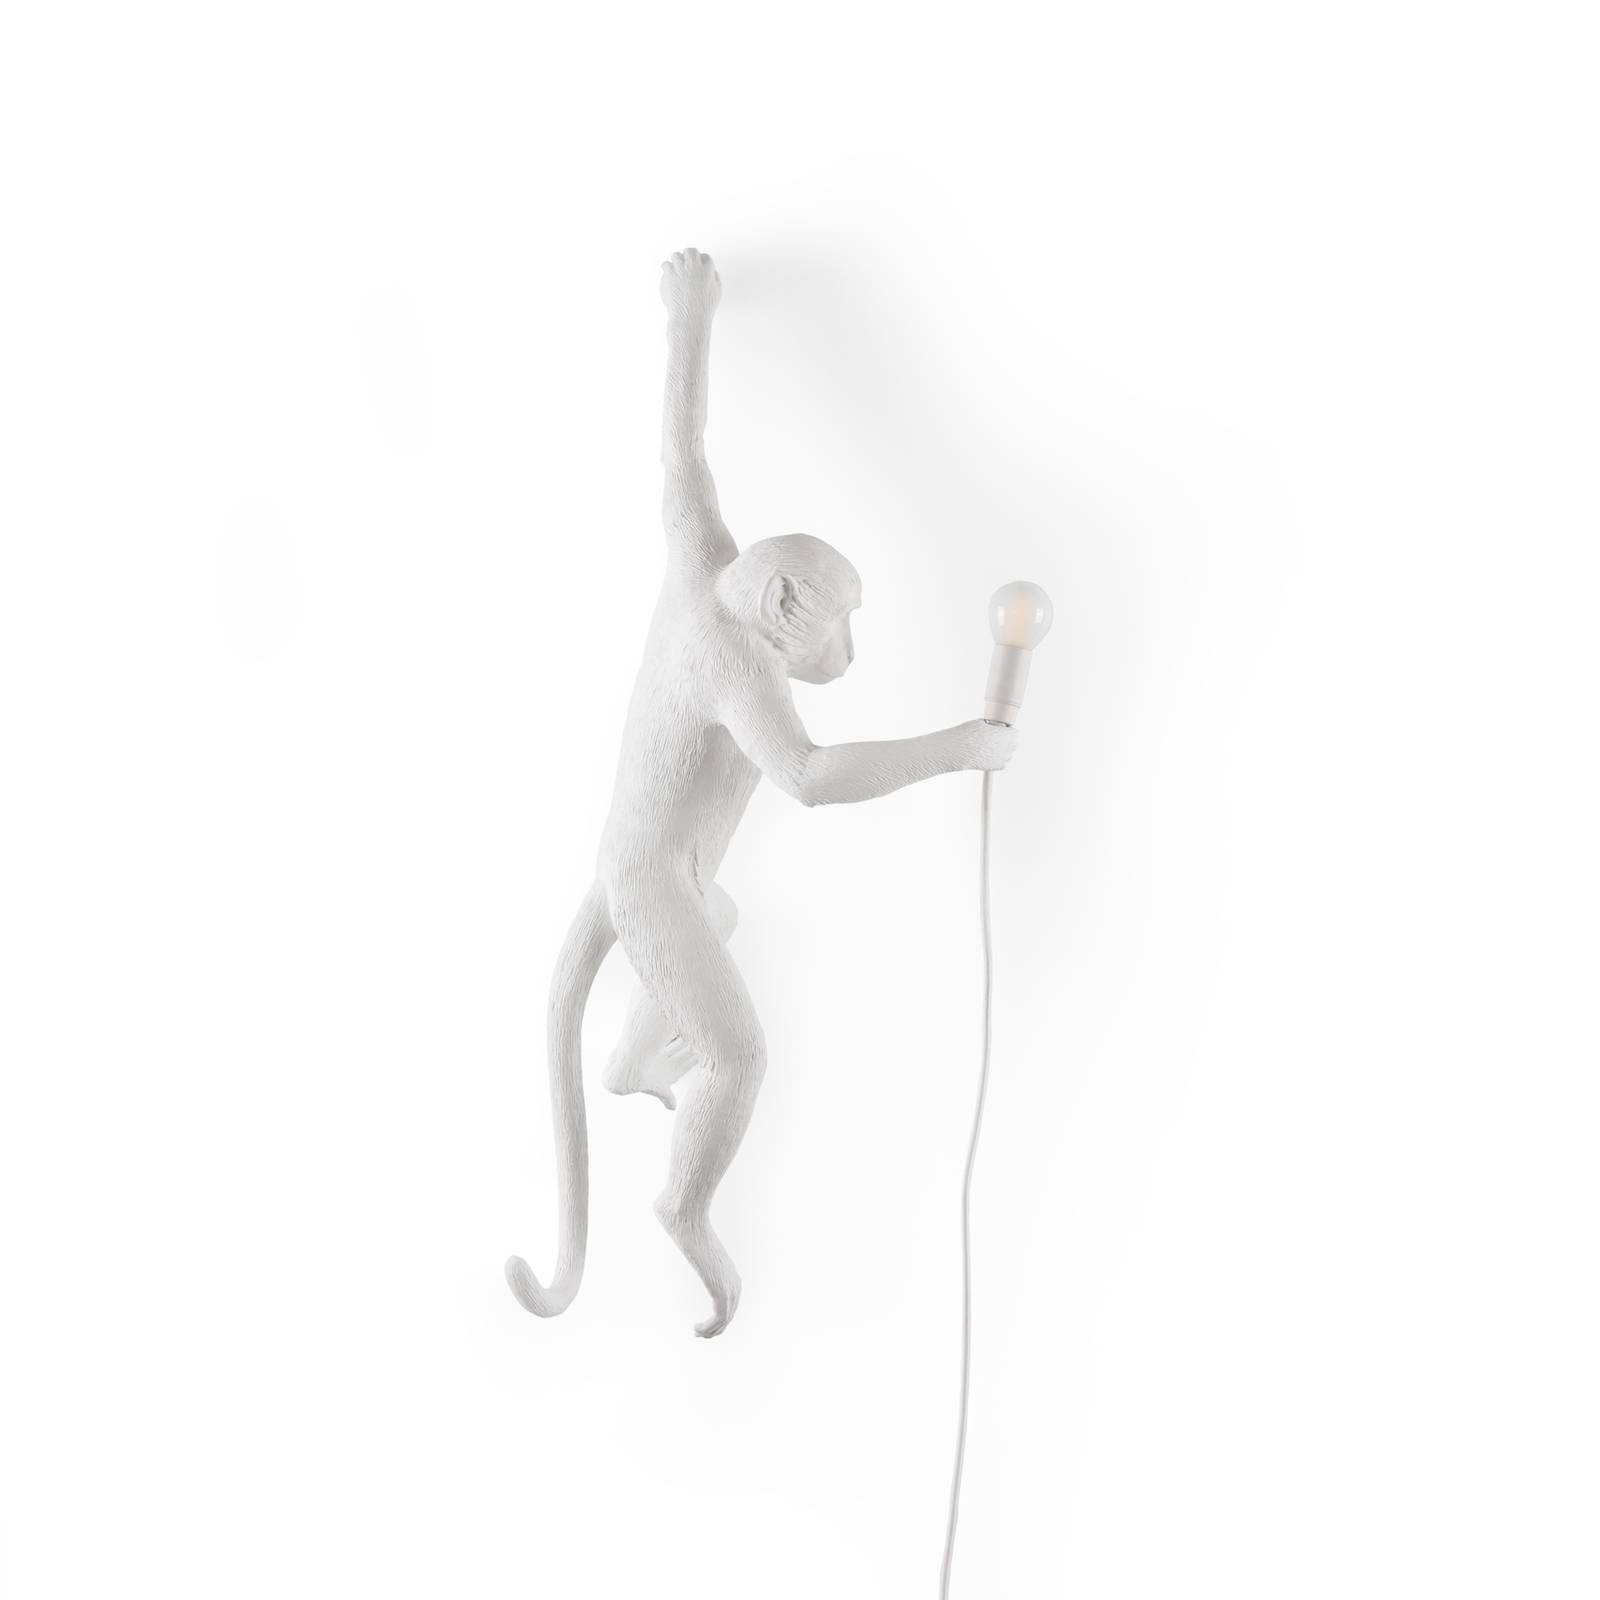 Seletti led dekor fali világítás monkey lamp, fehér, bal